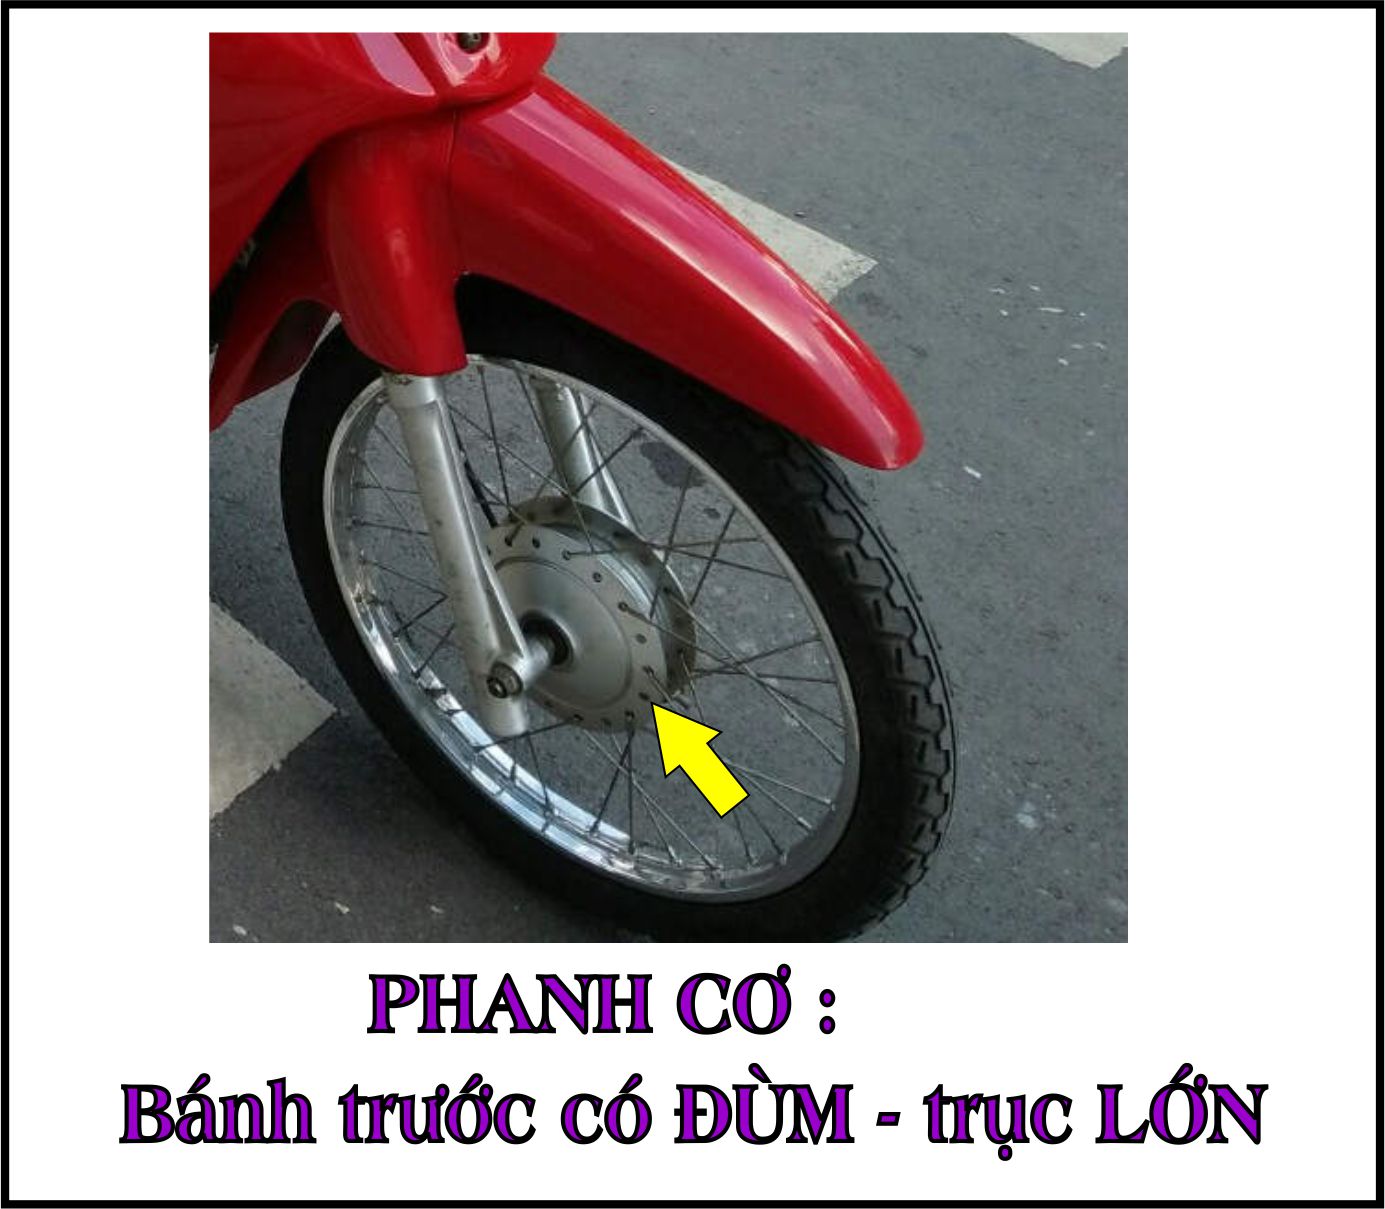 [TẶNG TEM] Bộ vỏ nhựa màu VÀNG SƯỜN ĐEN cho xe Wave 110 - Wave  Thái  - Wave Zx đời 1997 đến  2006- TKB-666(8271)